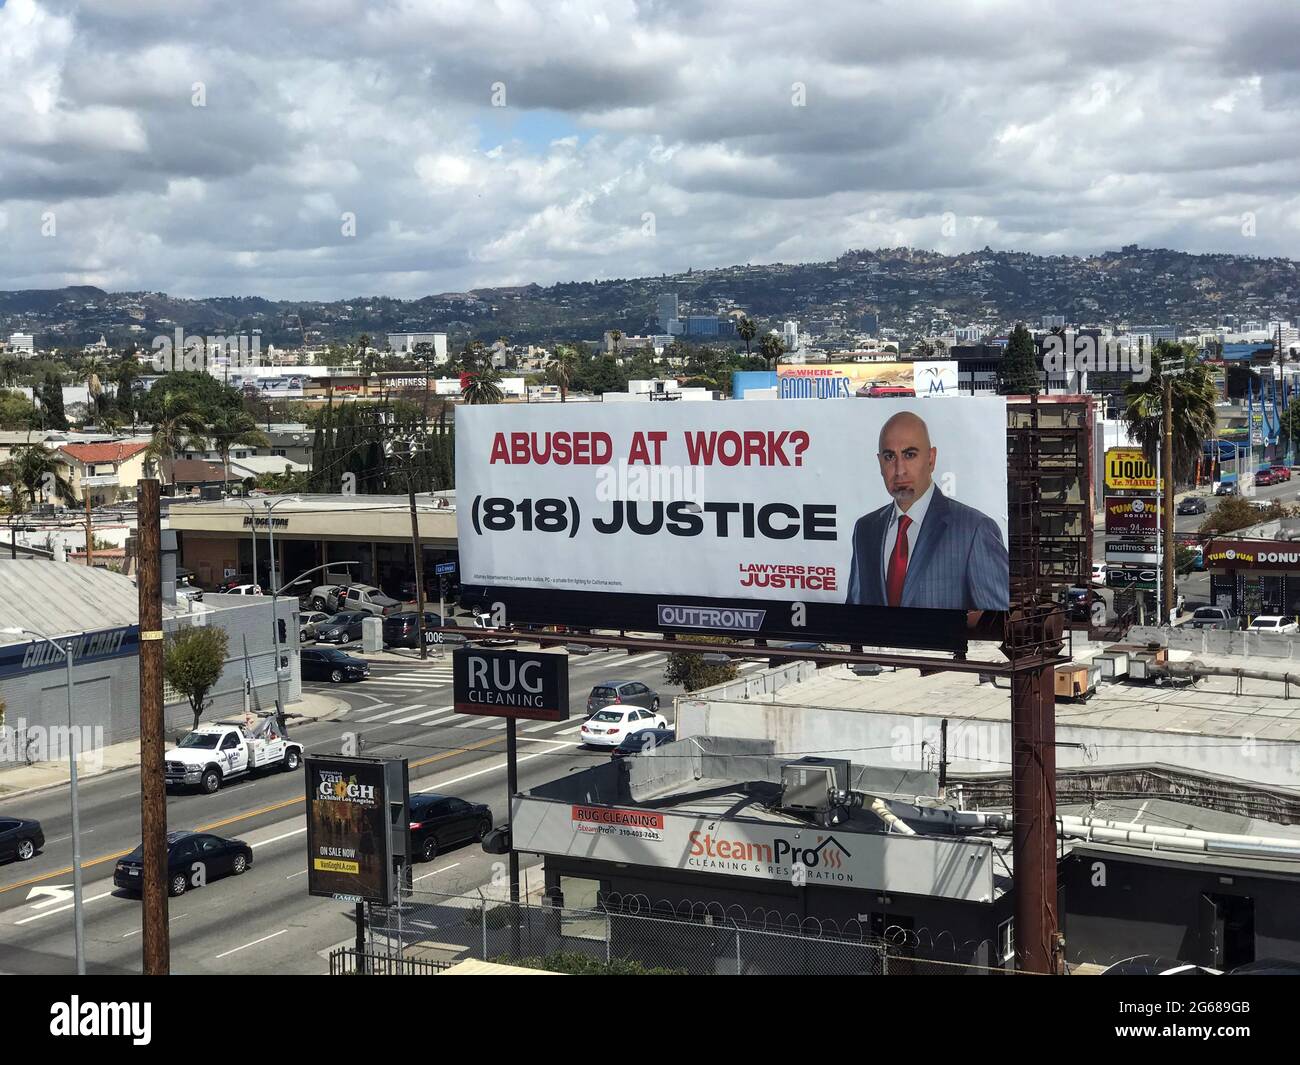 Panneaux publicitaires dans le paysage urbain de Los Angeles publicitaires des services juridiques pour abus au travail. Banque D'Images